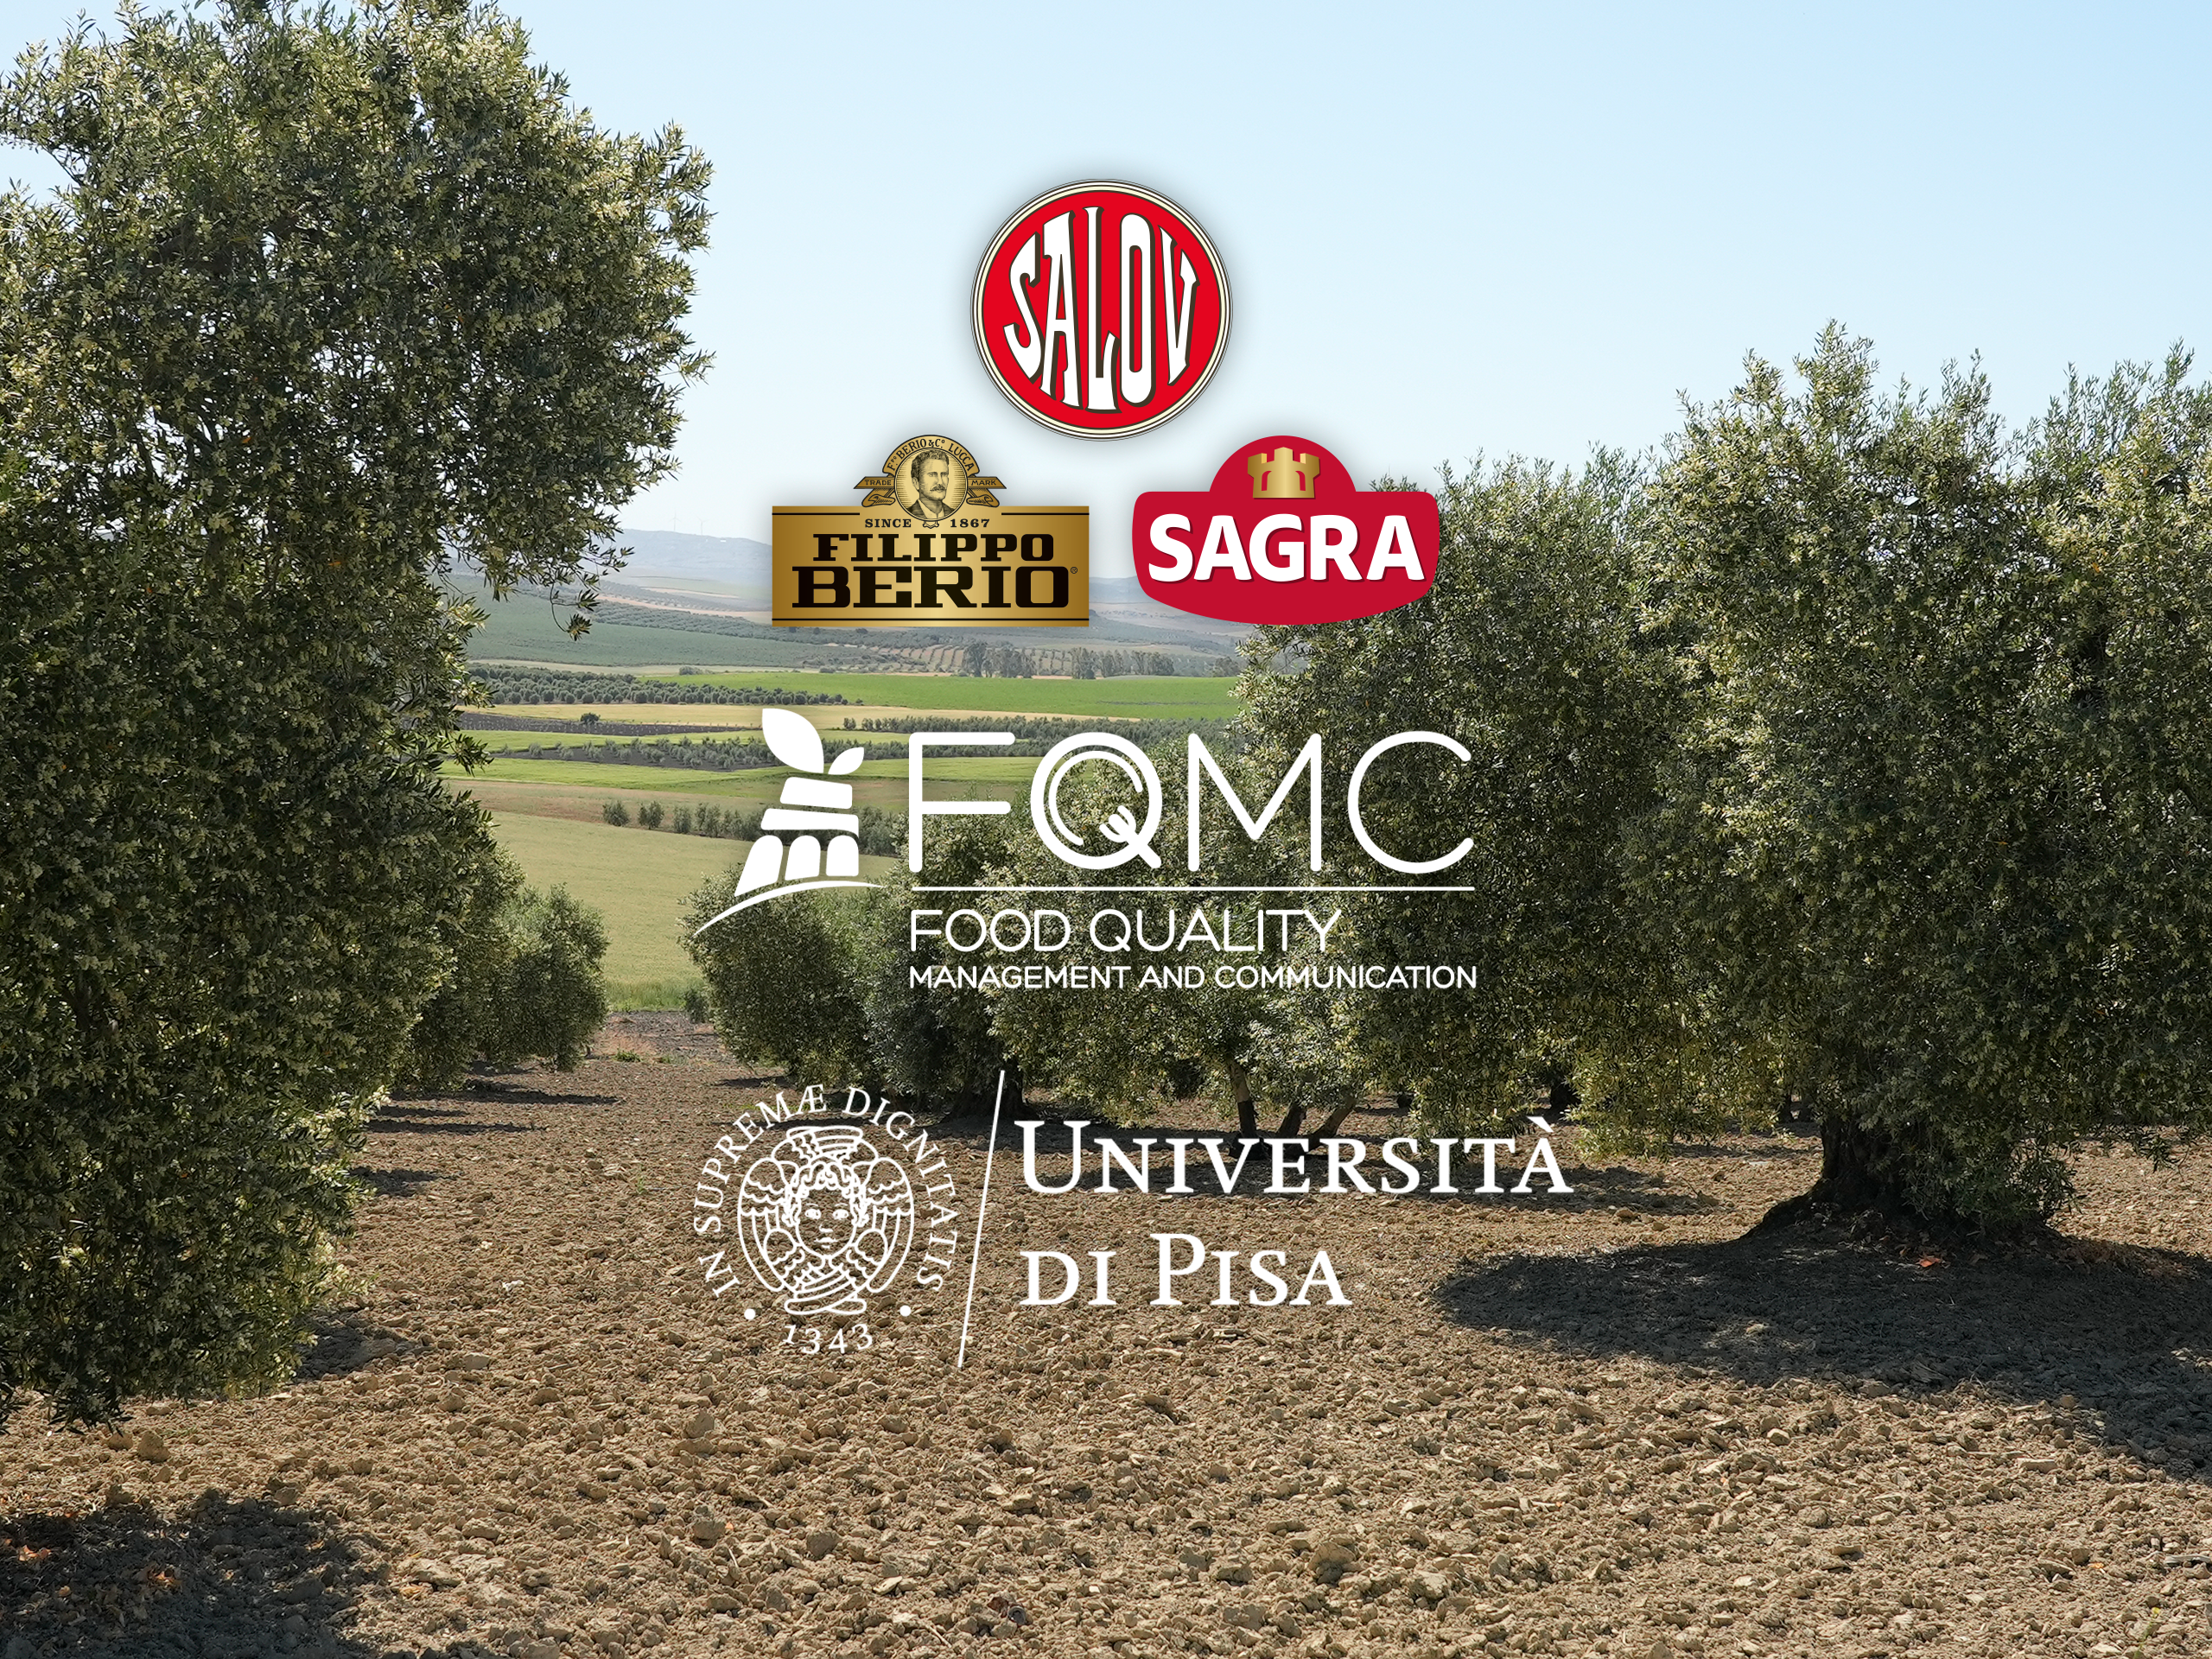 Salov a fianco del Master in Food Quality Management and Communication dell’Università di Pisa.